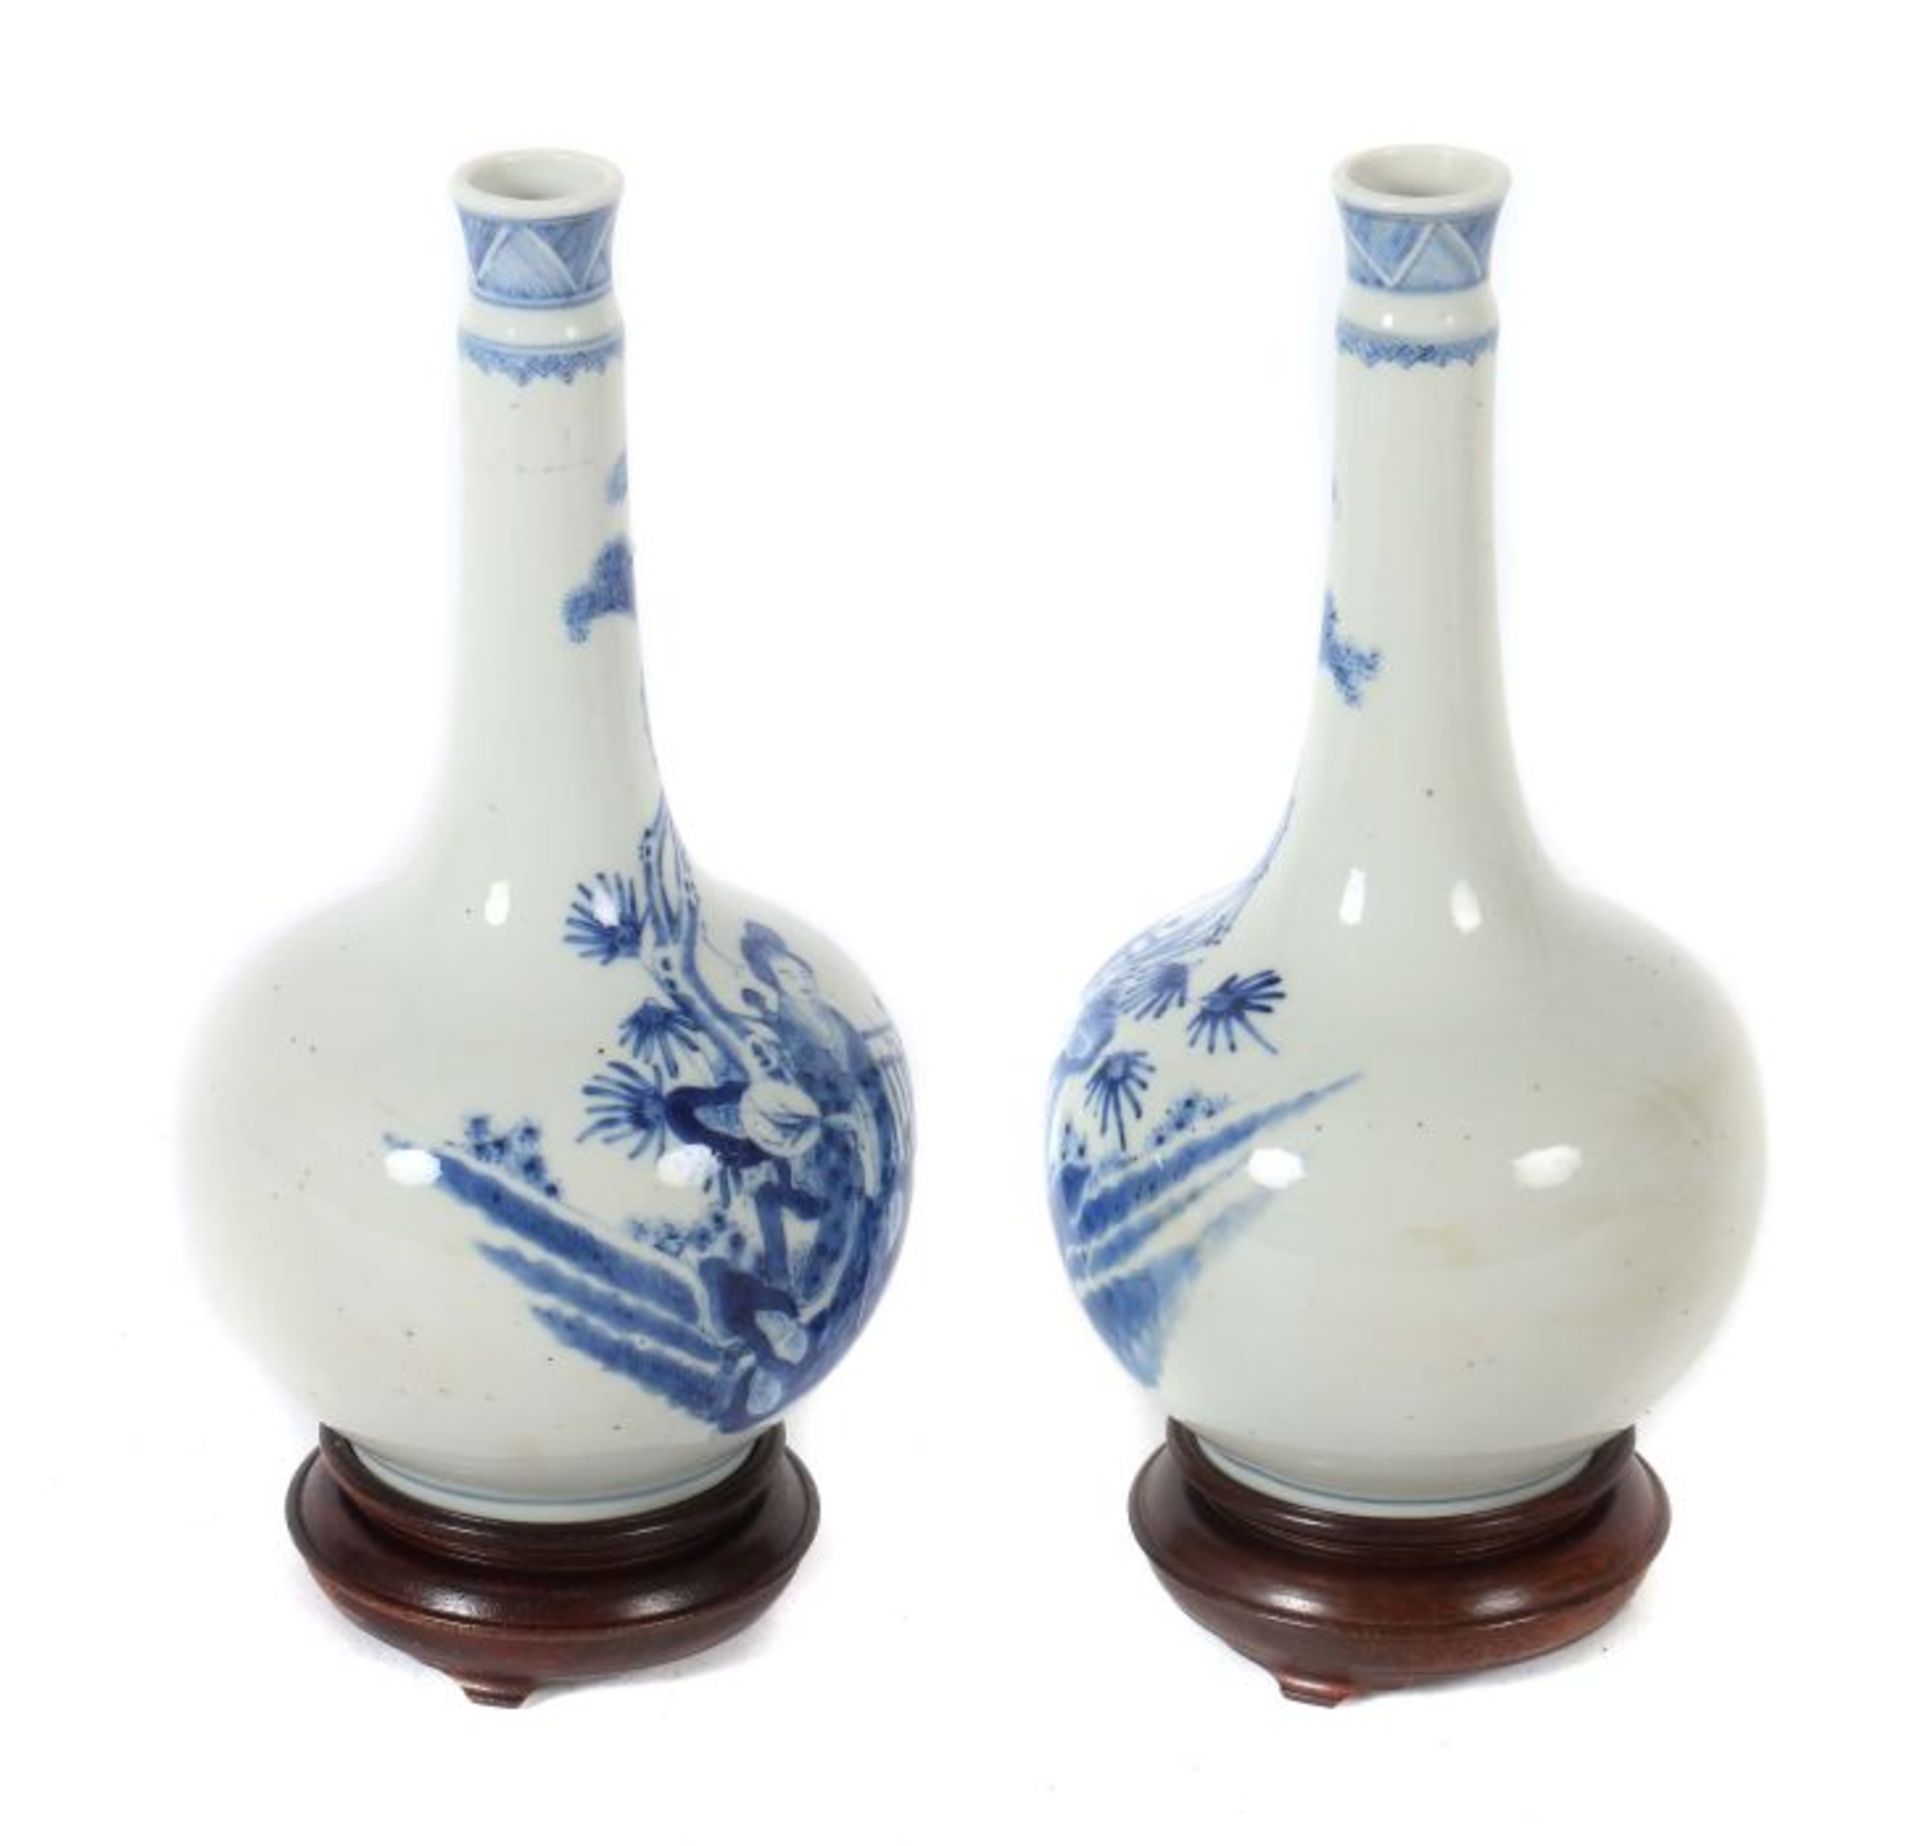 Vasenpaar China, 19. Jh., Porzellan, Blaumalerei, gespiegelte Szene einer Dame, einen Fächer haltend - Bild 2 aus 3